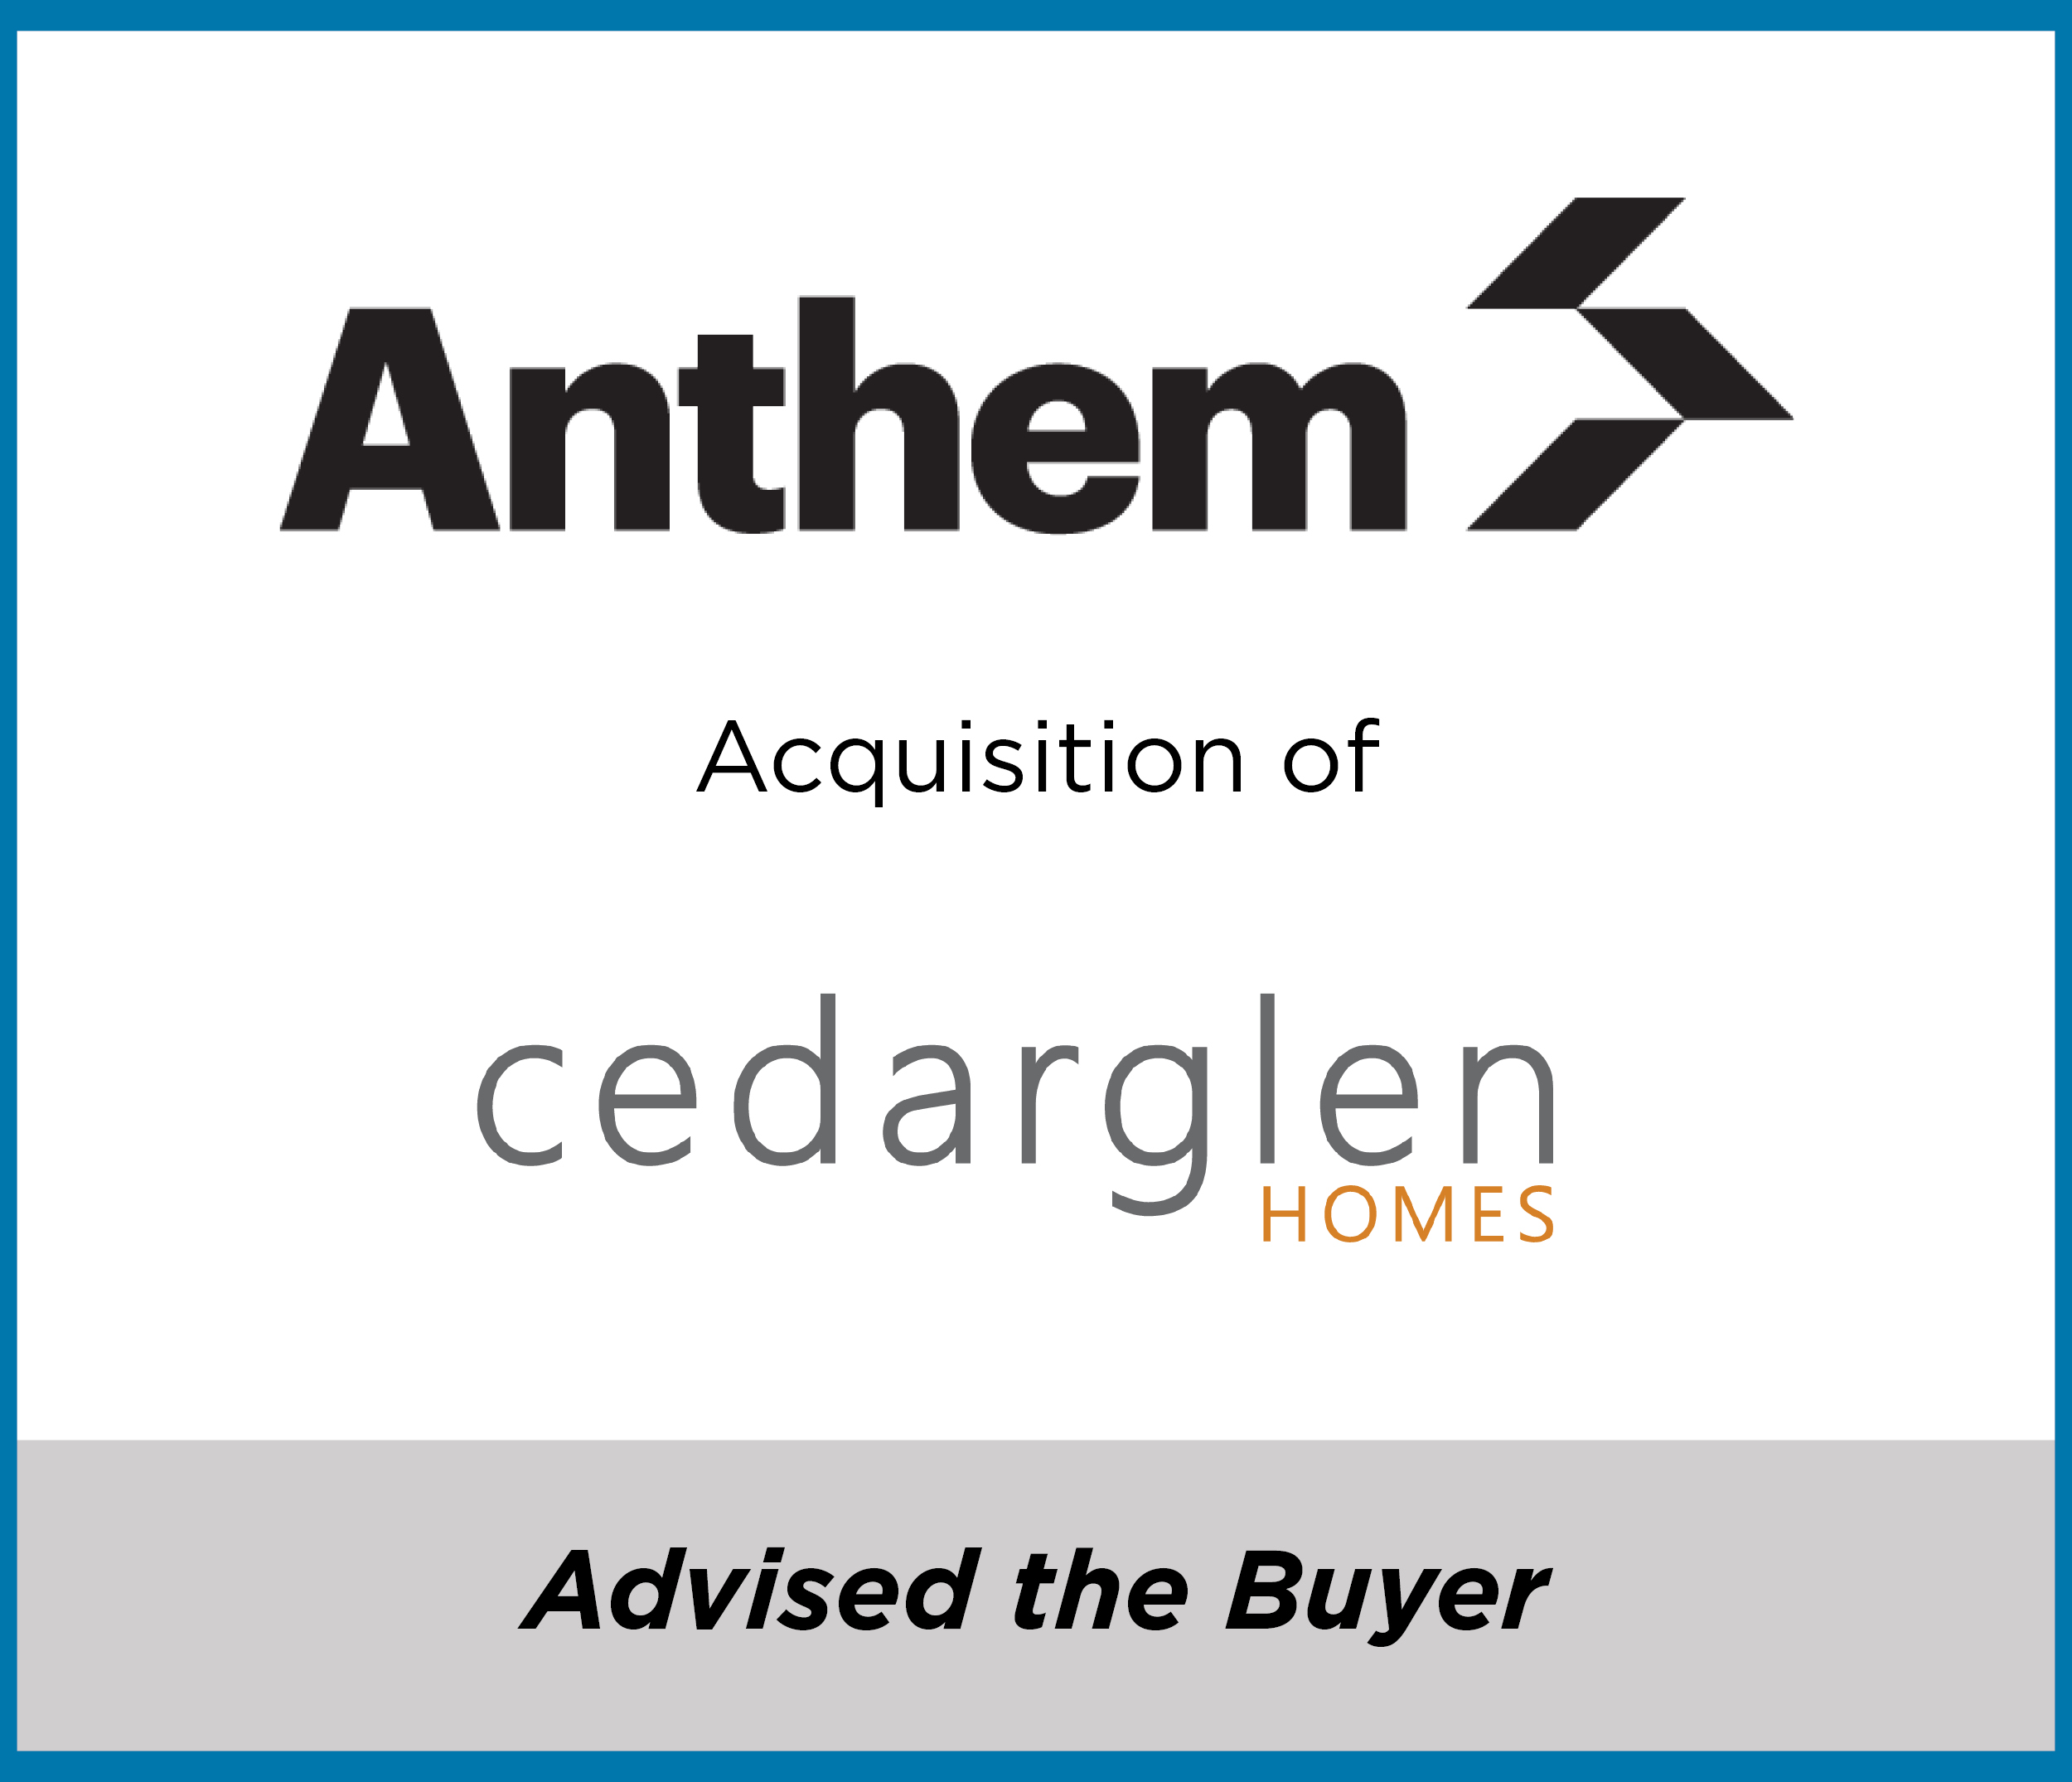 Anthem Properties acquires Cedarglen Homes